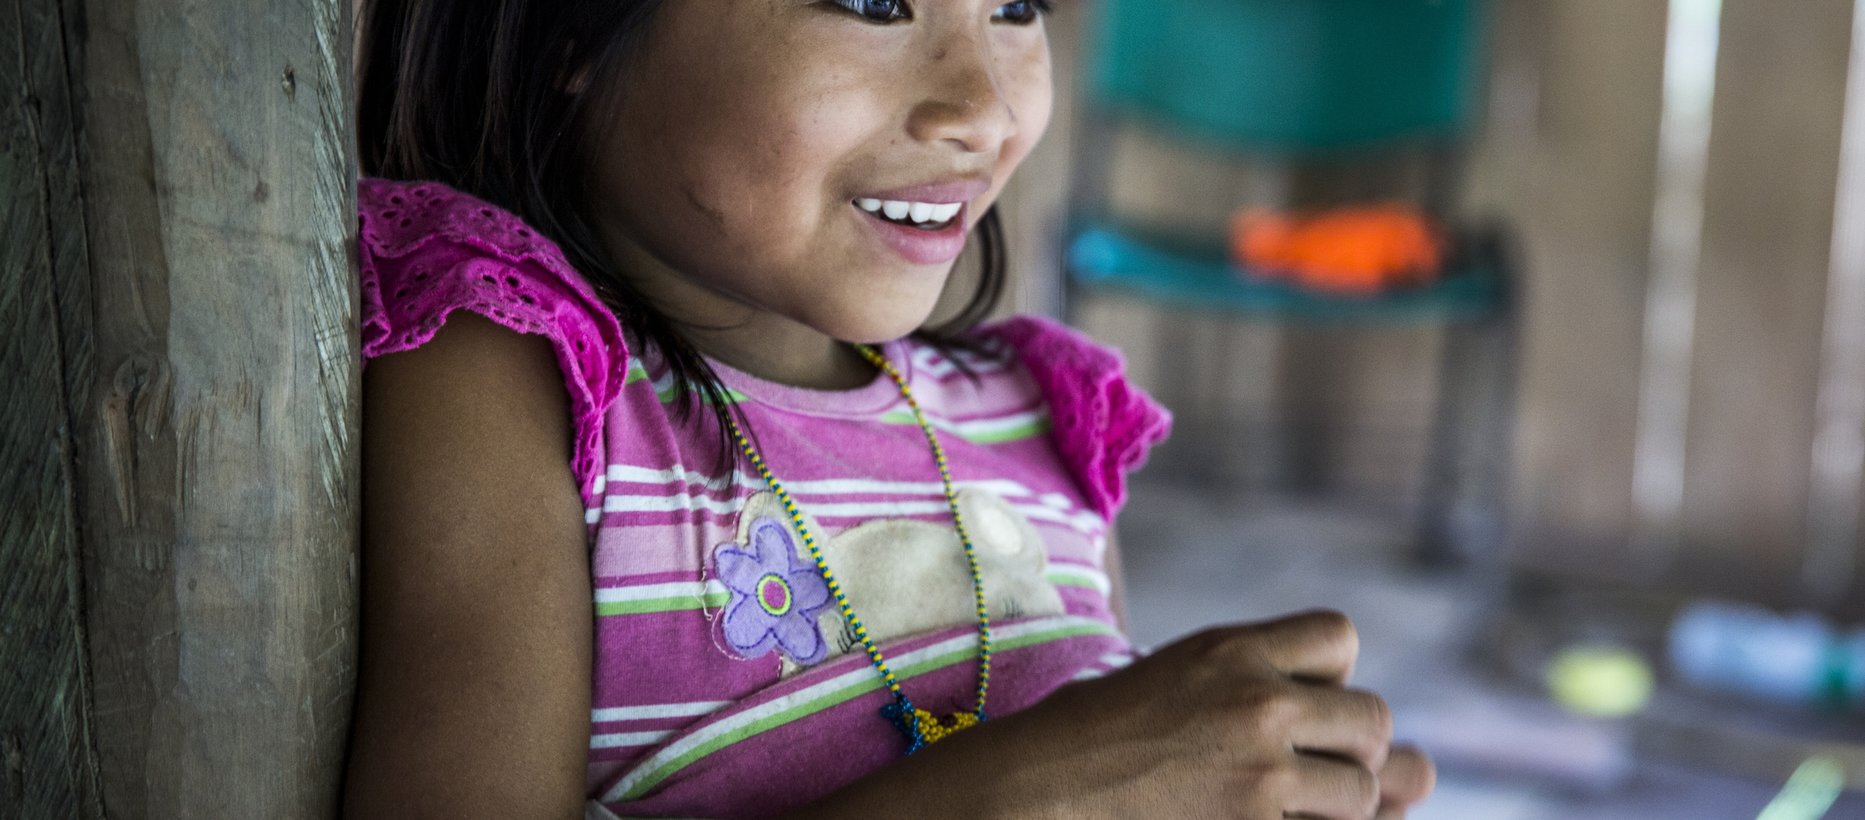 Kolumbialainen tyttö hymyilemässä, teksti lähetys- ja avustustyö.